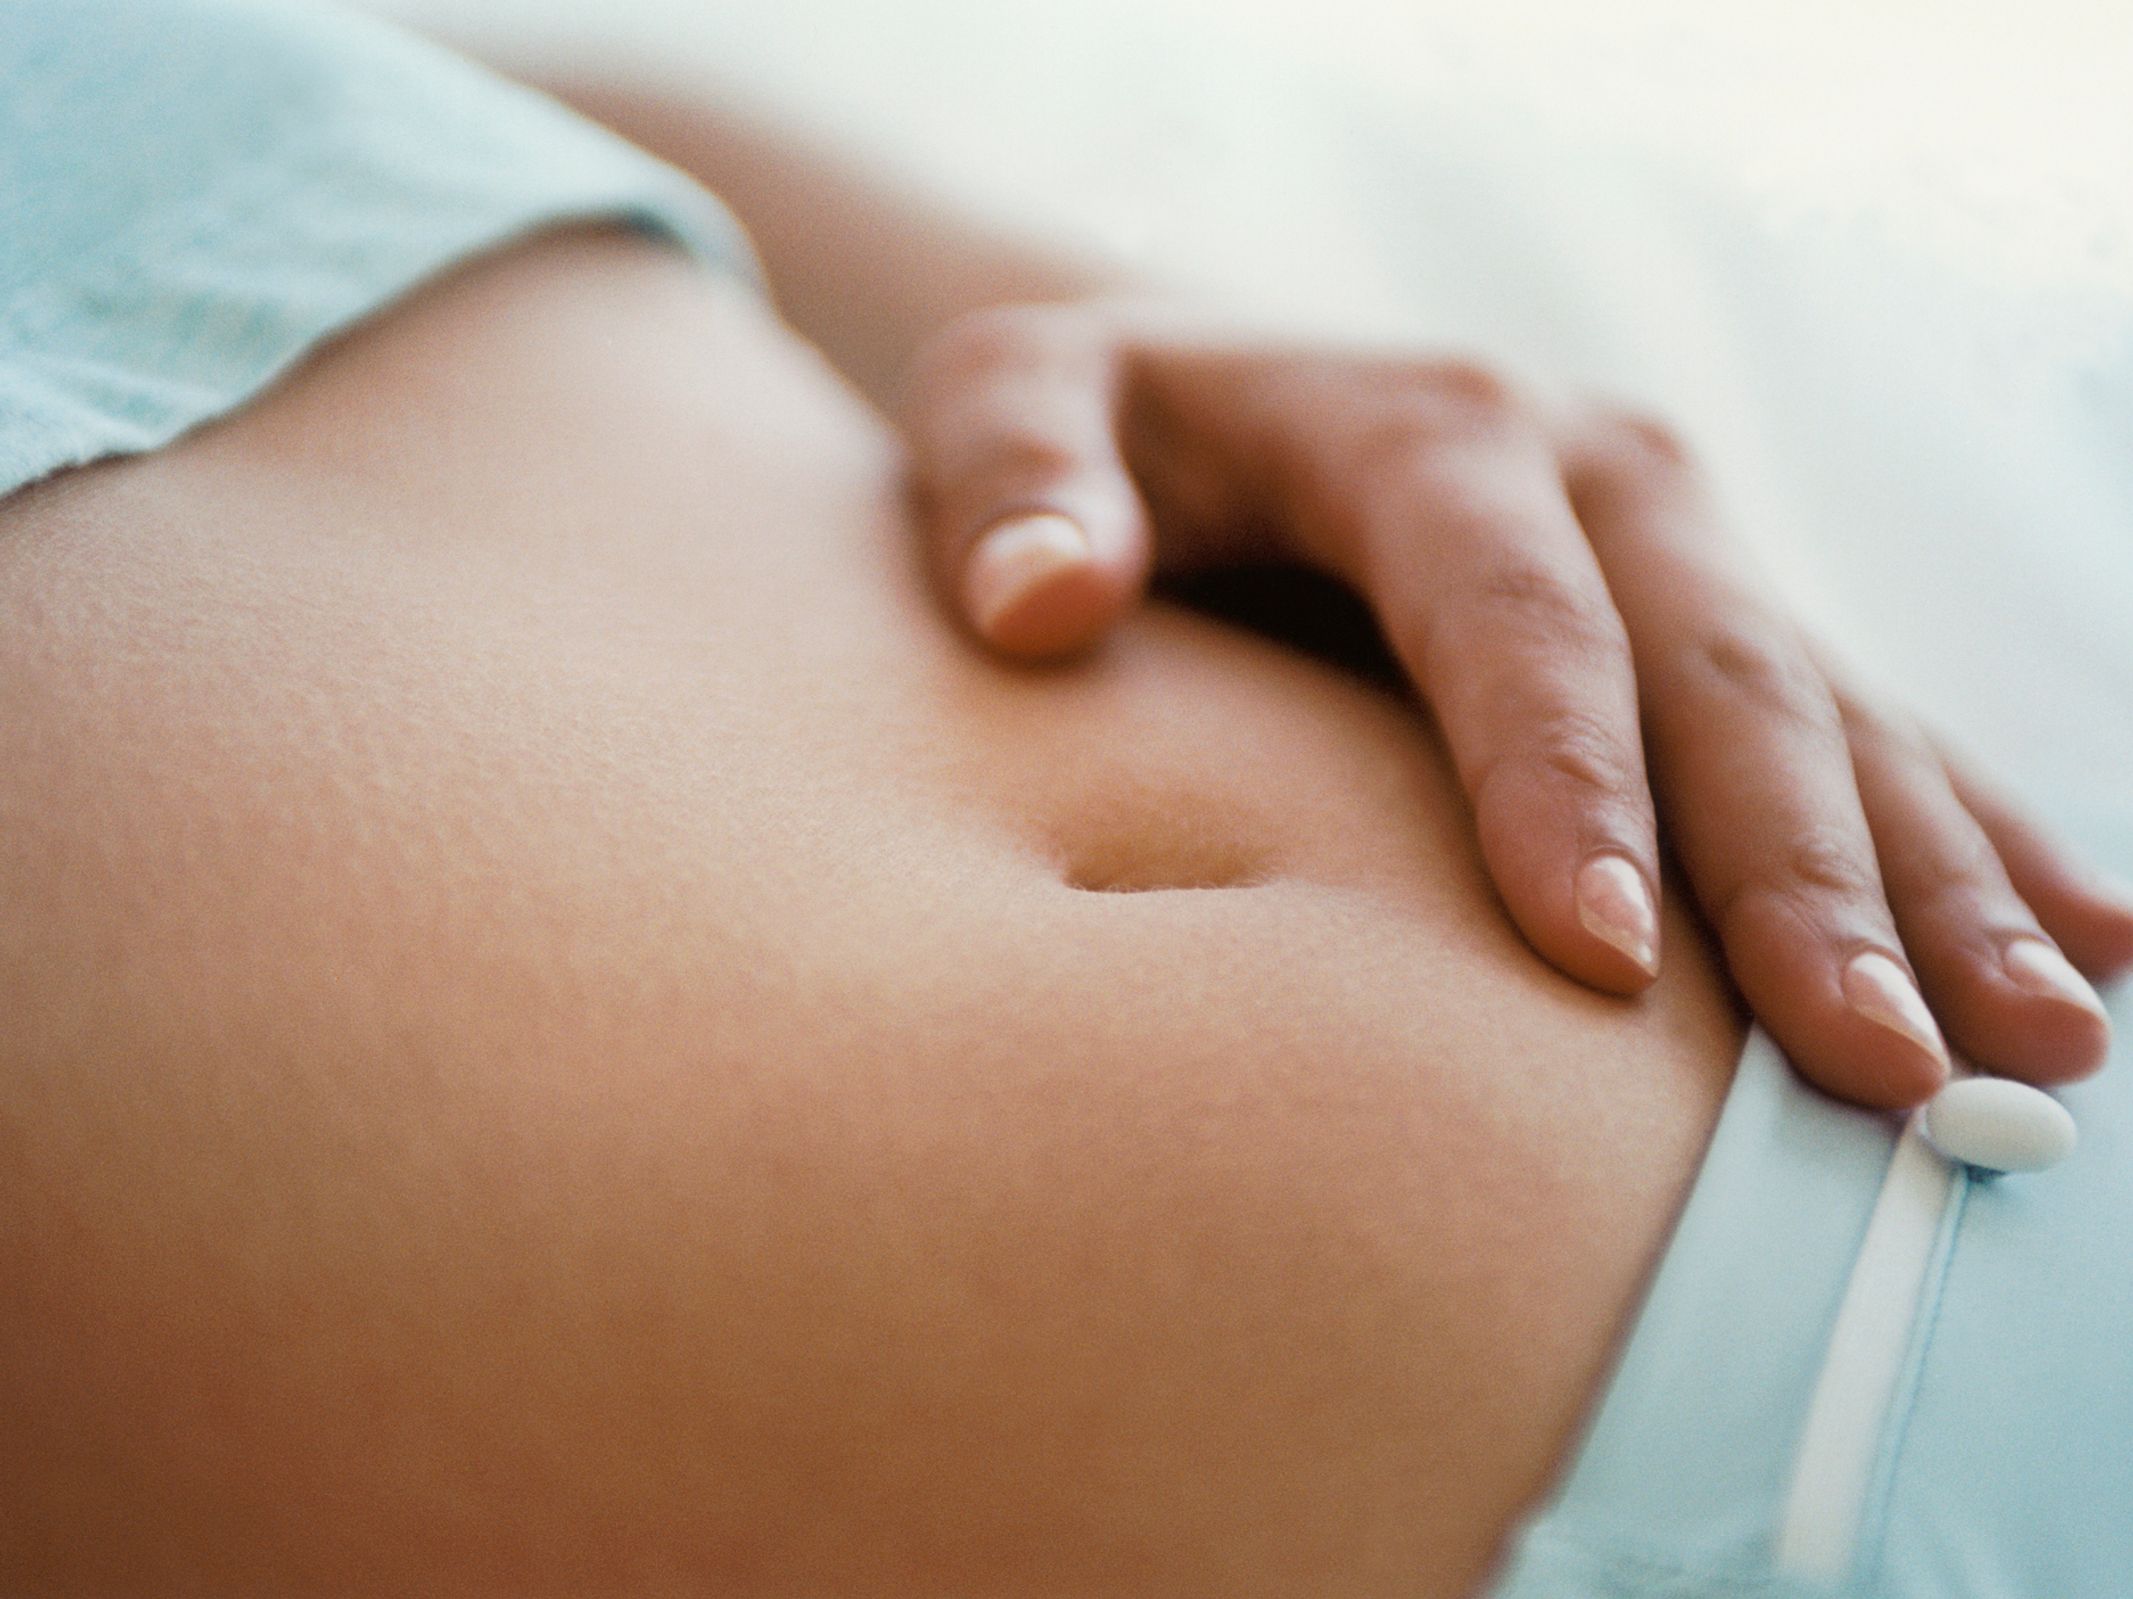 Comment savoir si on est enceinte ? les premiers signes